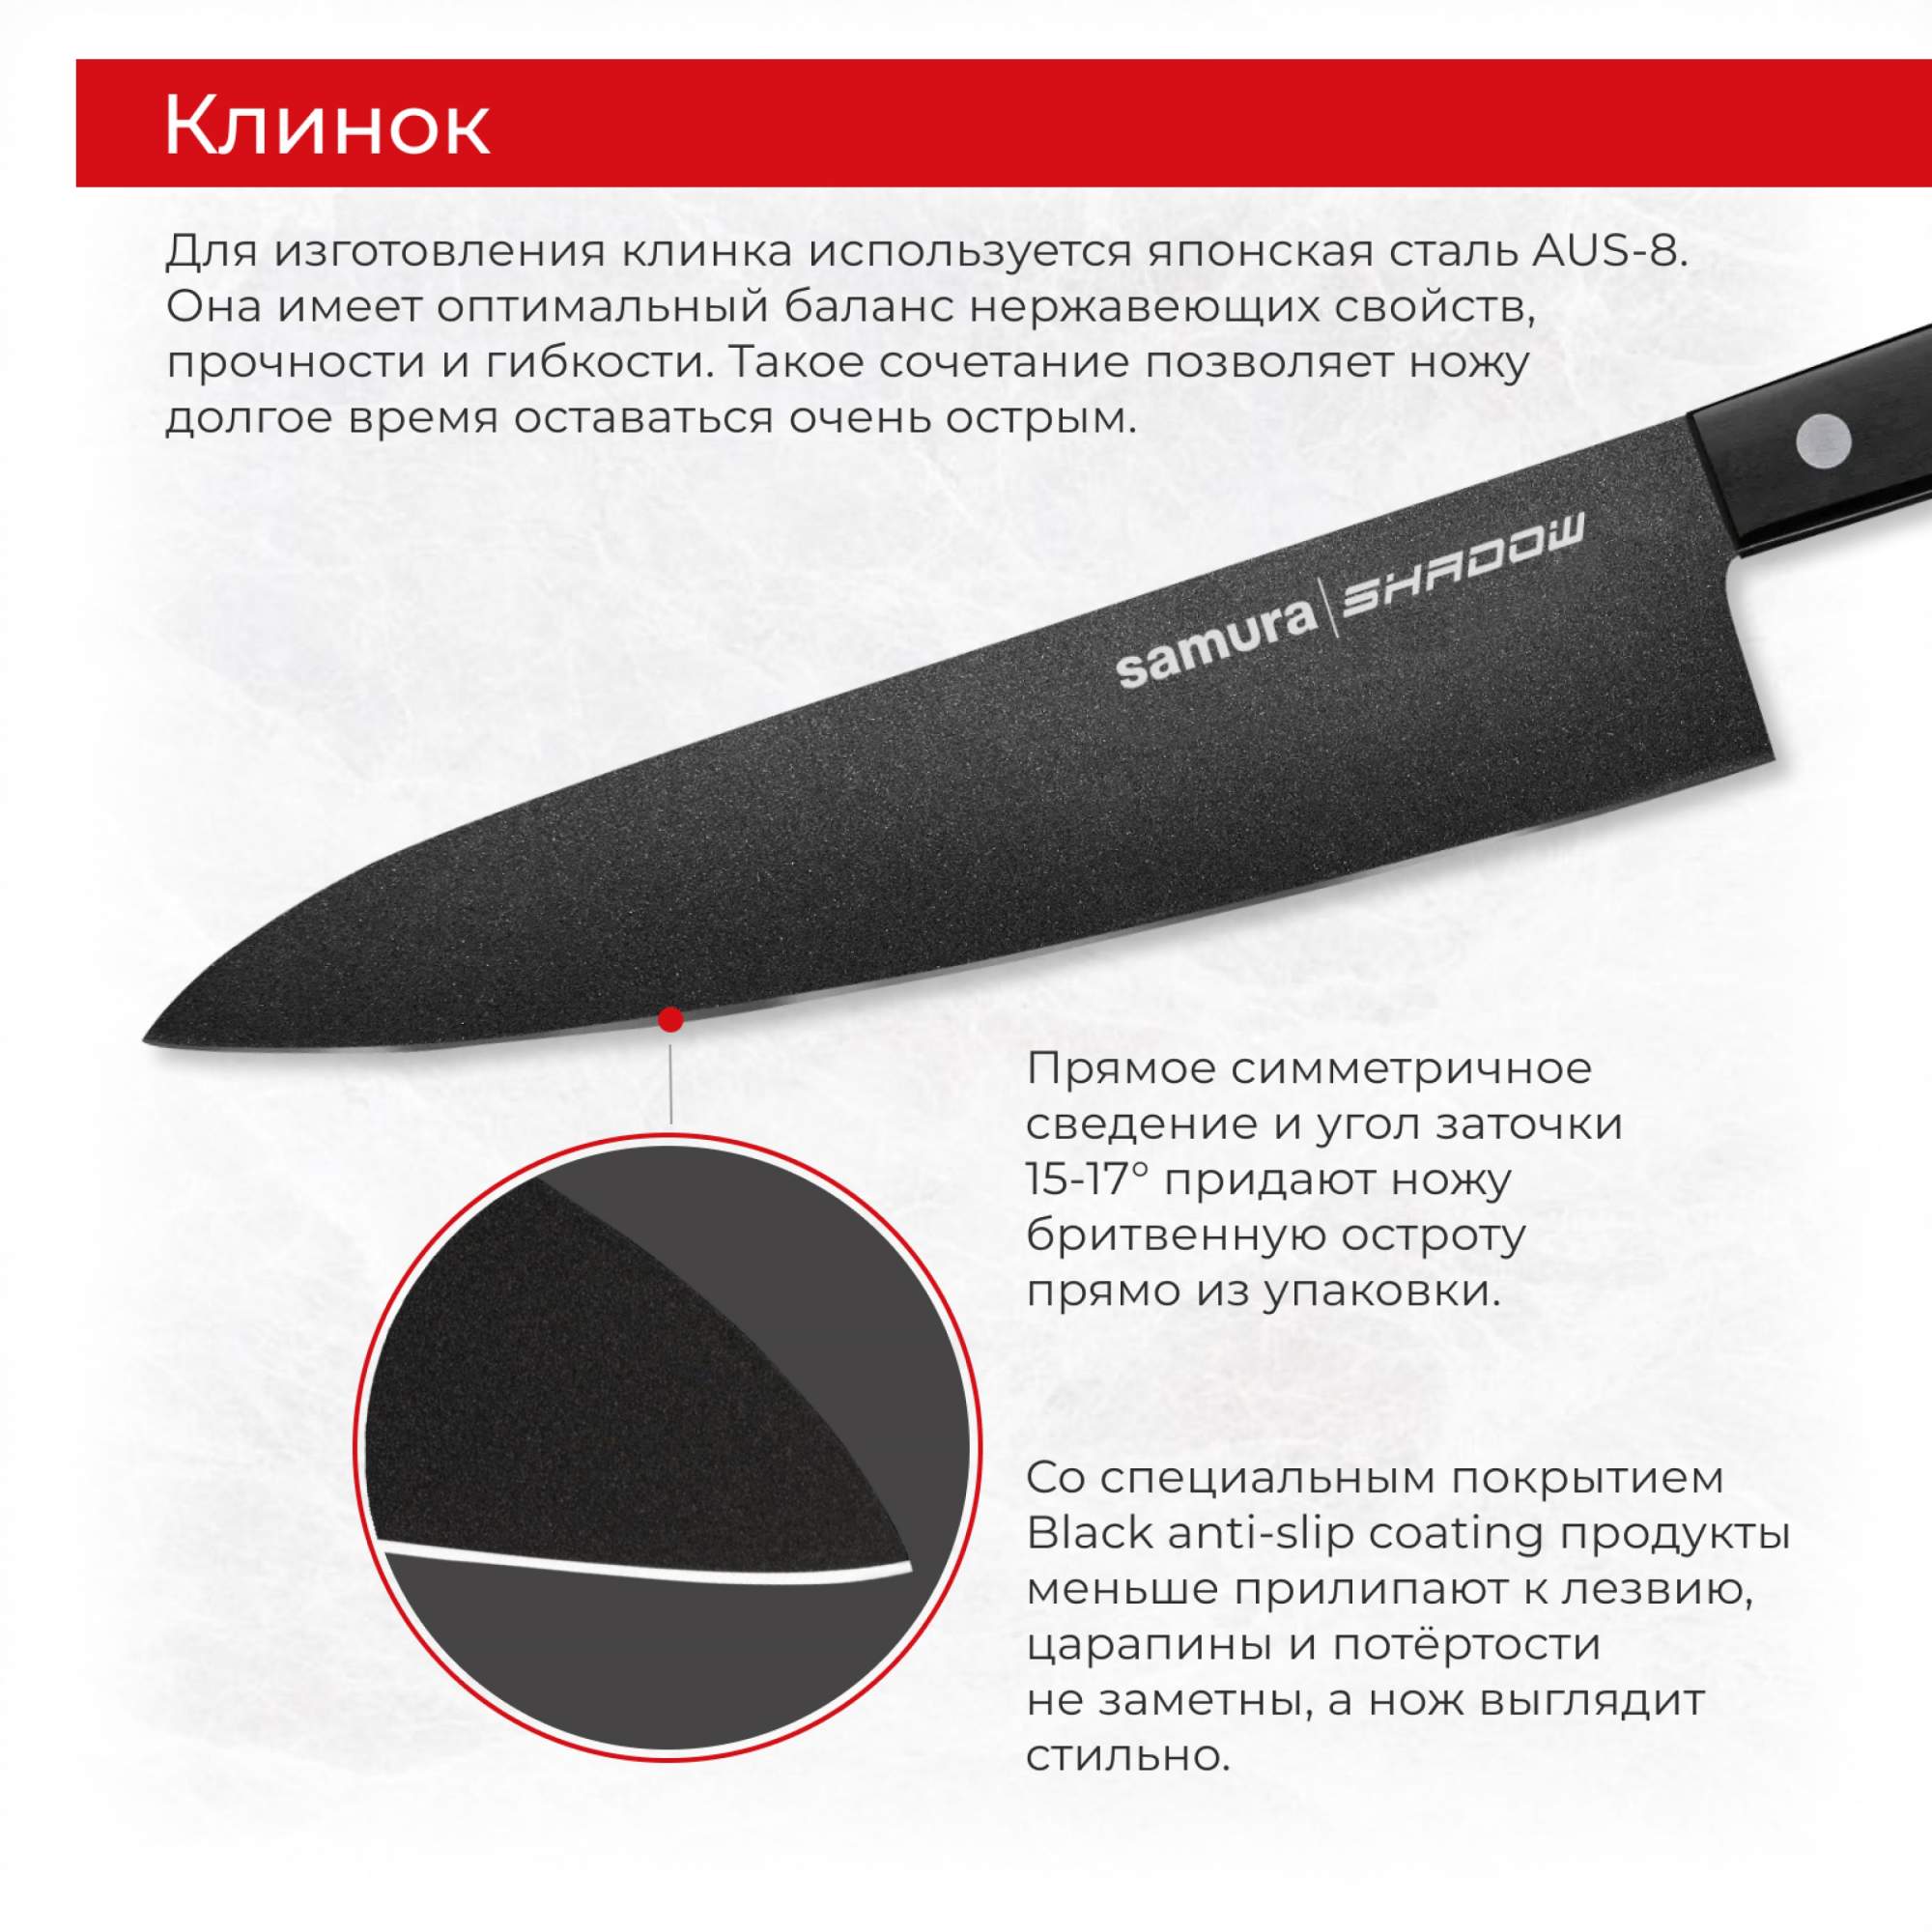  кухонных поварских профессиональных ножей Samura Shadow .